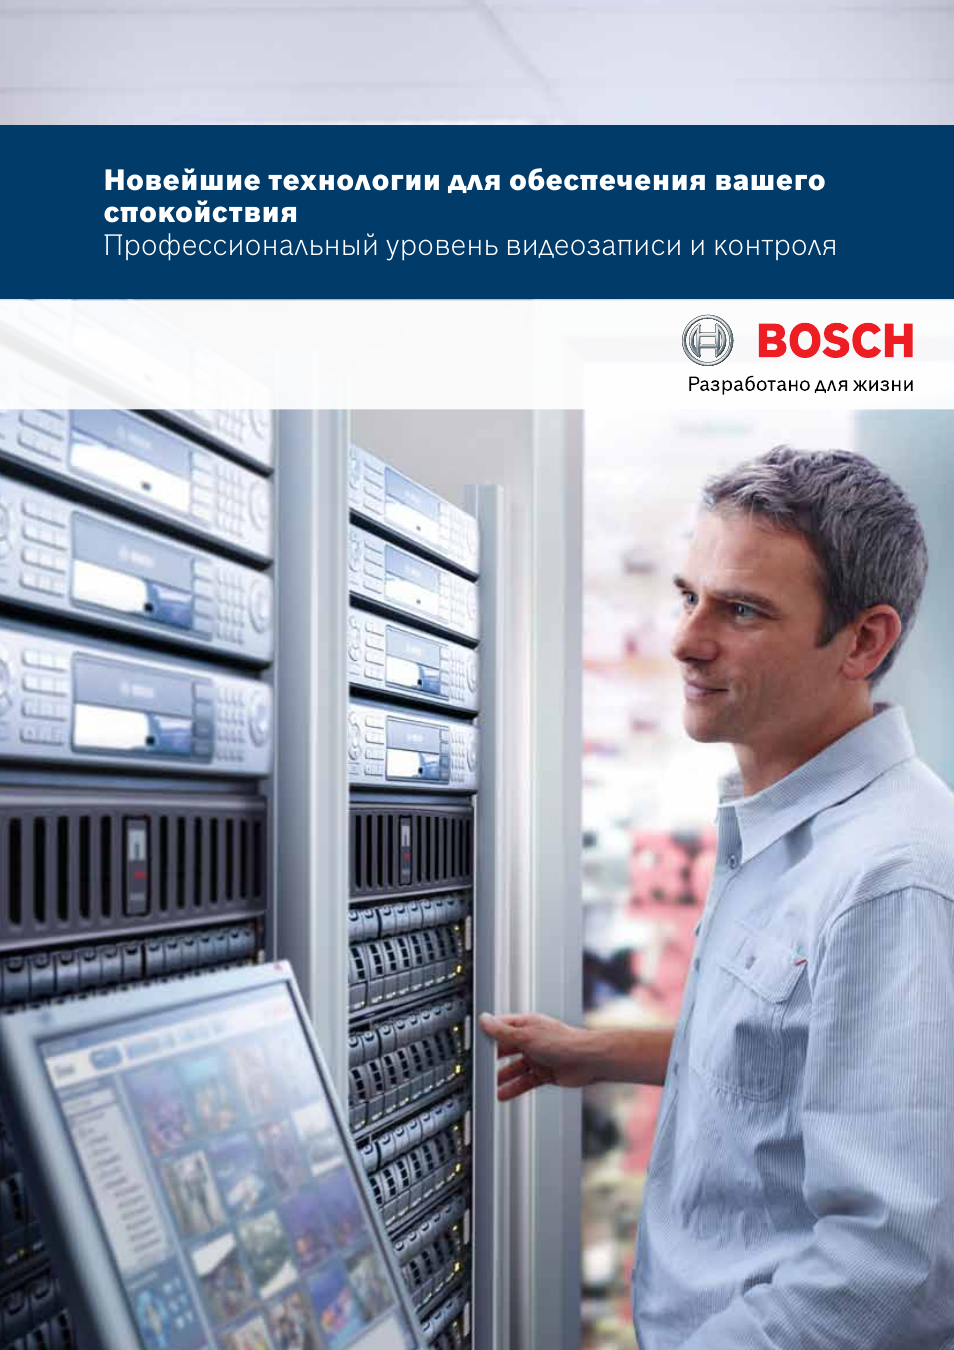 Бош разработано для жизни. Bosch видео. Bosch Operator client. Bosch Brochure. Video client